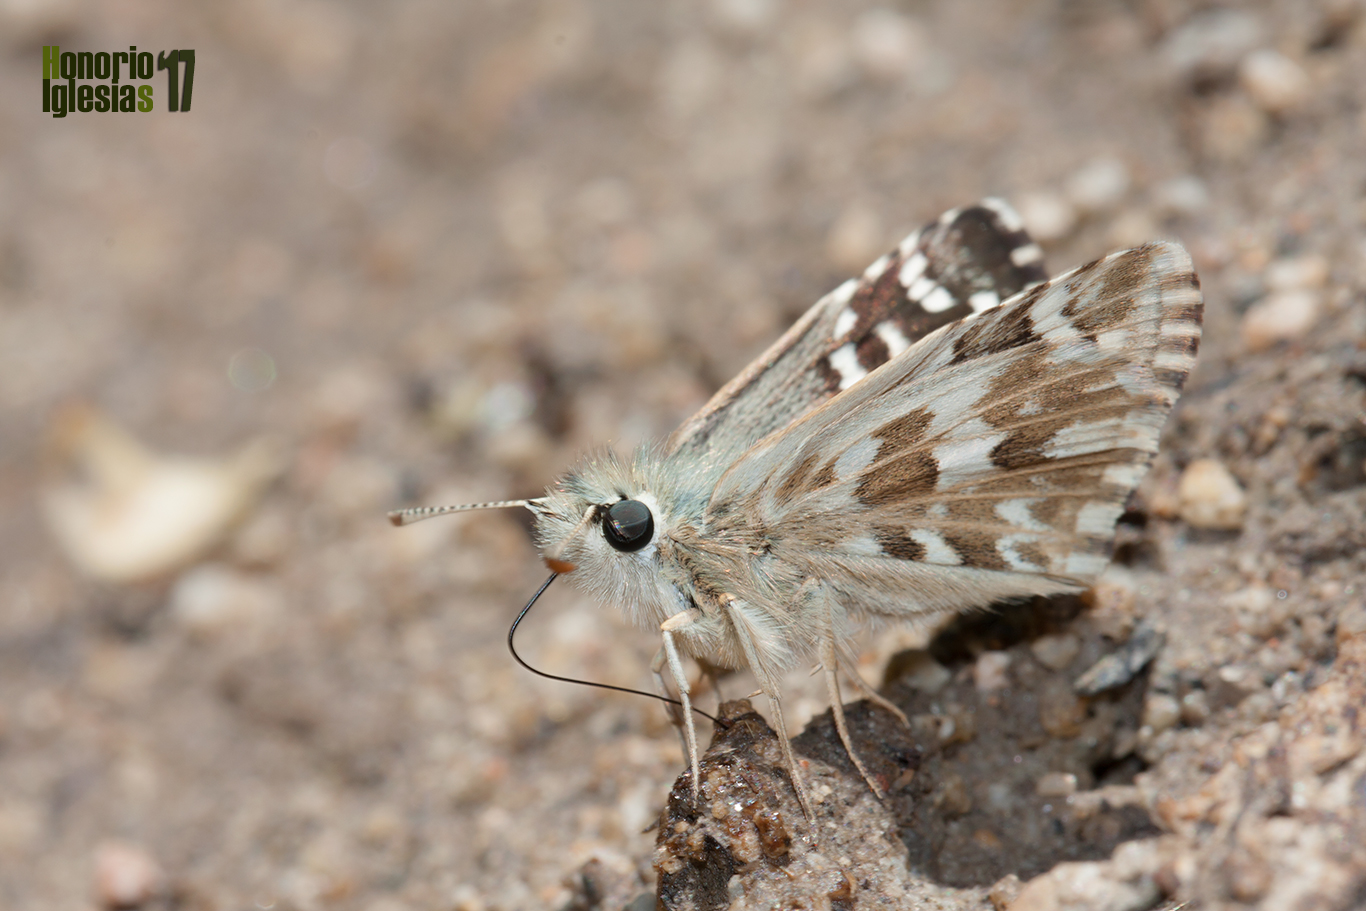 Ejemplar de mariposa ajedrezada menor (Pyrgus malvoides) libando agua y sales minerales de un charco, mostrando su reverso alar.